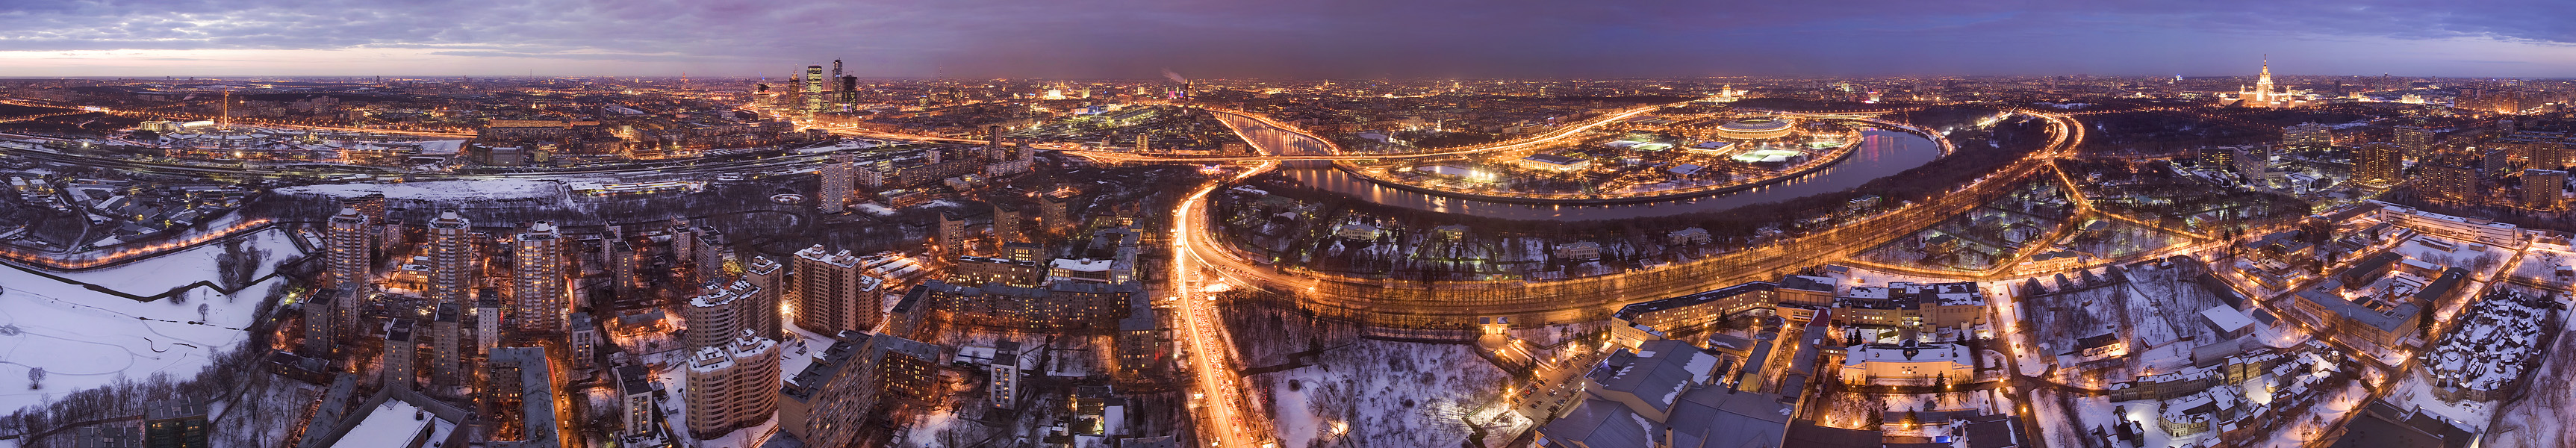 Панорама какая. Москва. Ночная Москва. Панорама Москвы Киевская.